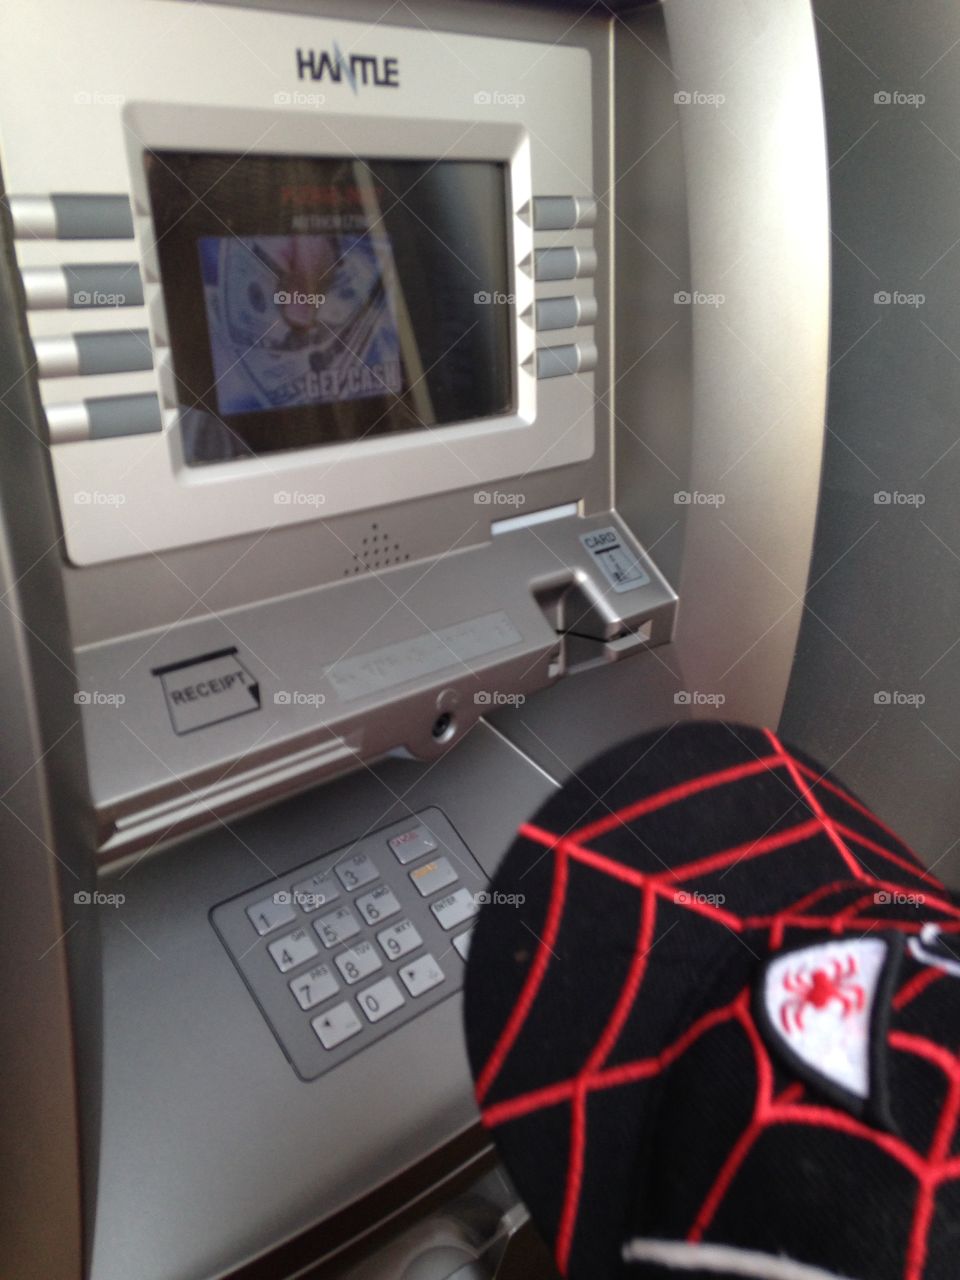 Spider-Man ATM